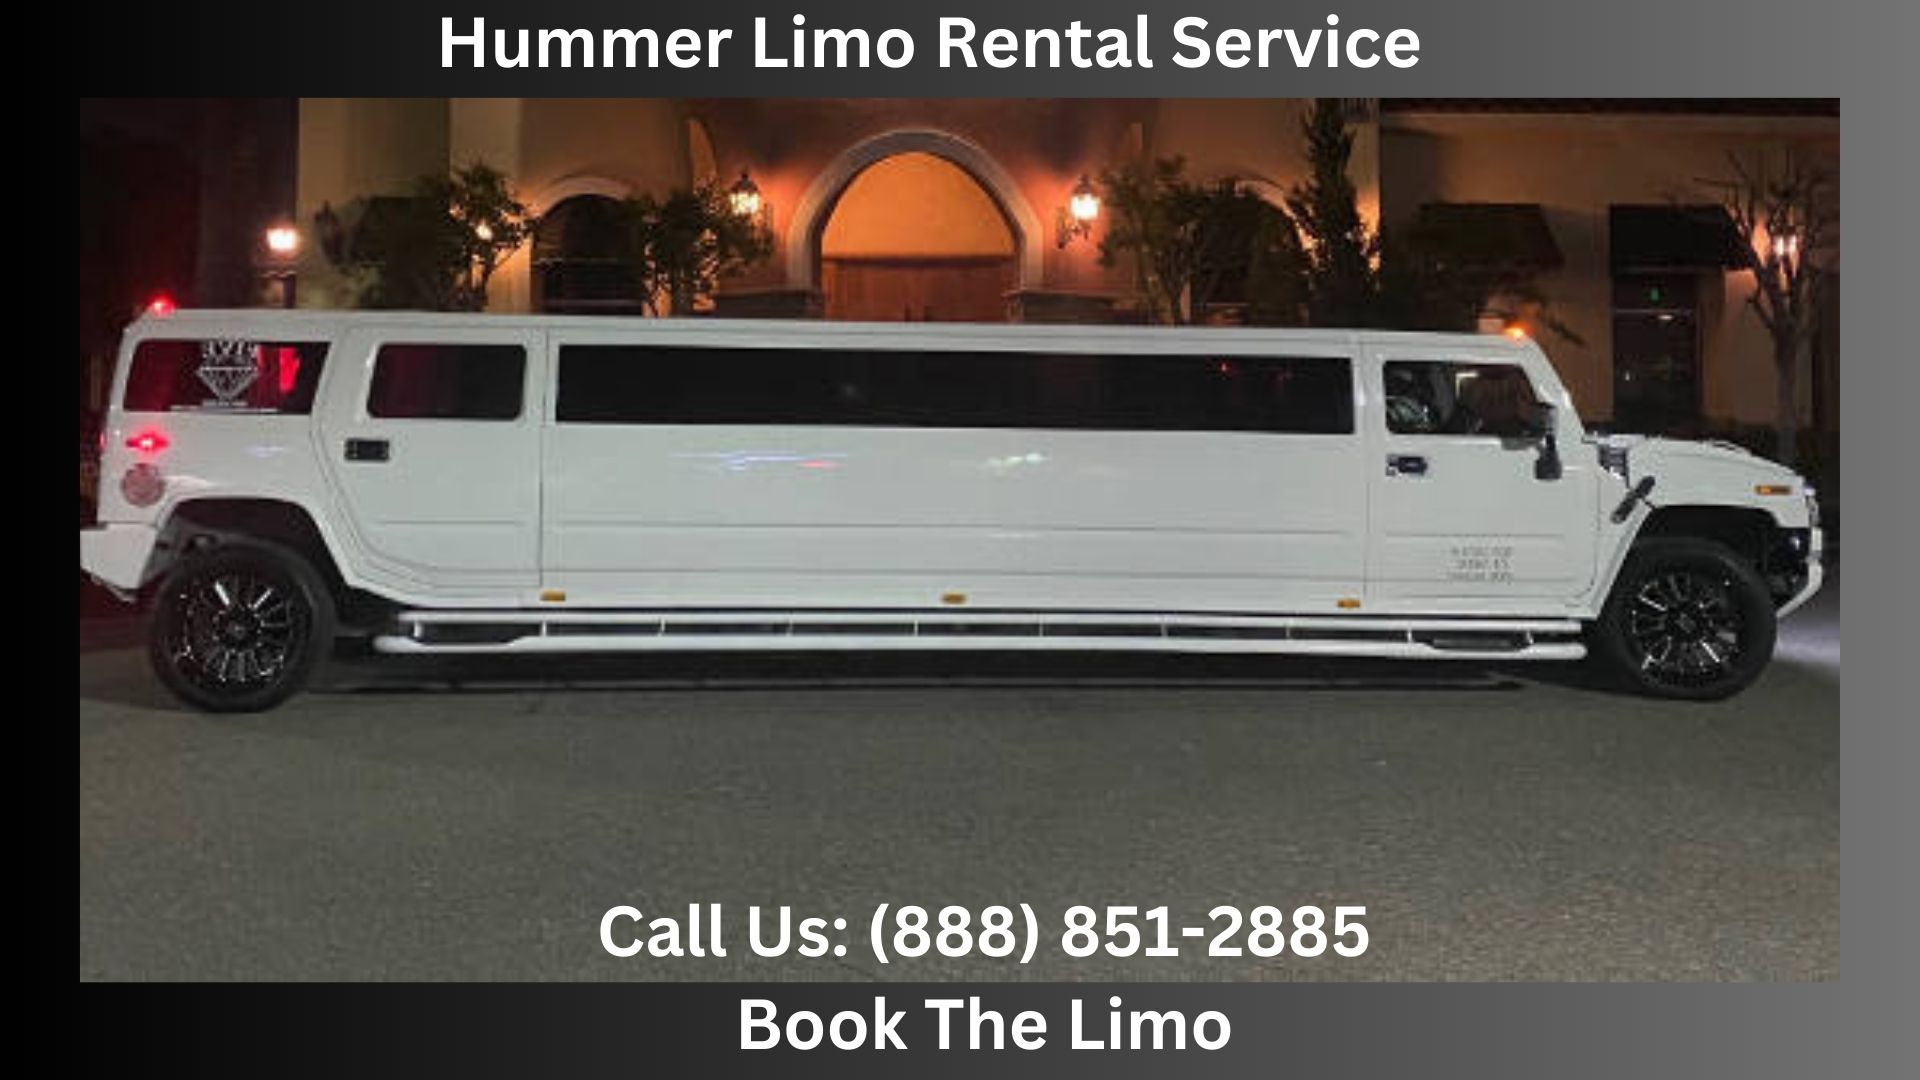 Hummer Limo Rental Service